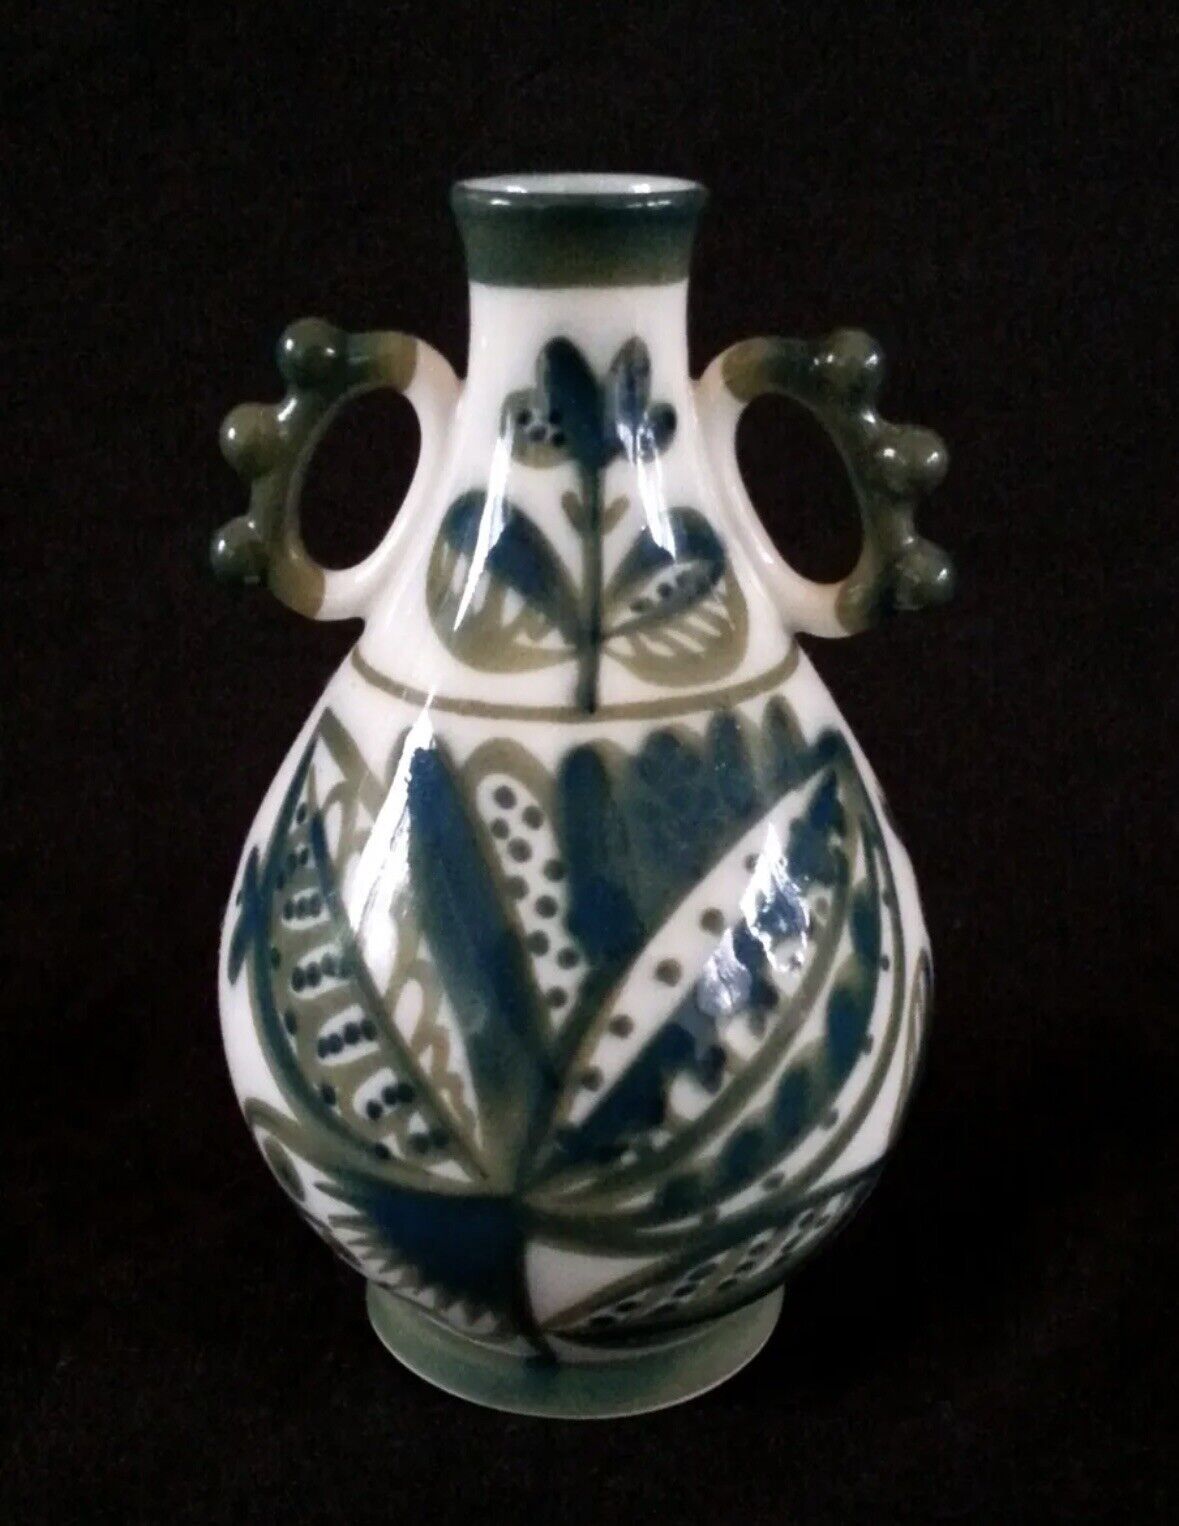 LFZ Porcelain Hand Painted by GORODETSKY Vase CACTUS Multi-Colors Vintage Rare